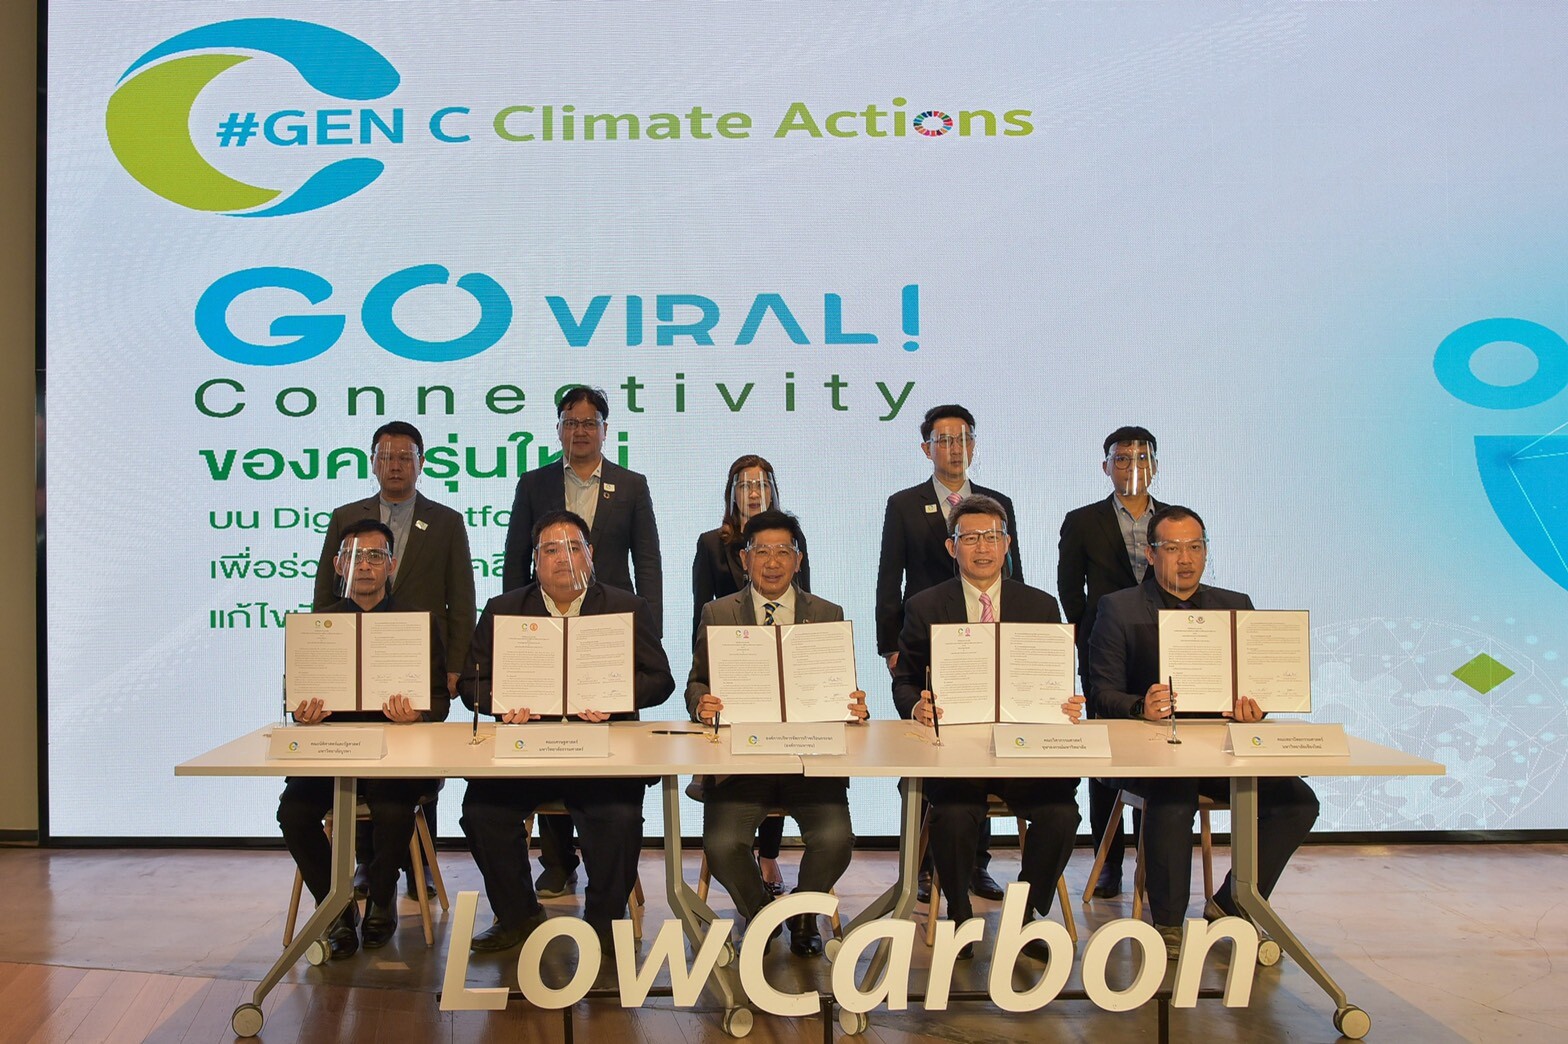 TGO ลงนามร่วม 4 มหาวิทยาลัยและเปิดตัว GEN C CLIMATE ACTIONS: Connectivity ของคนรุ่นใหม่ ร่วมกันแก้ไขปัญหาภาวะโลกร้อน